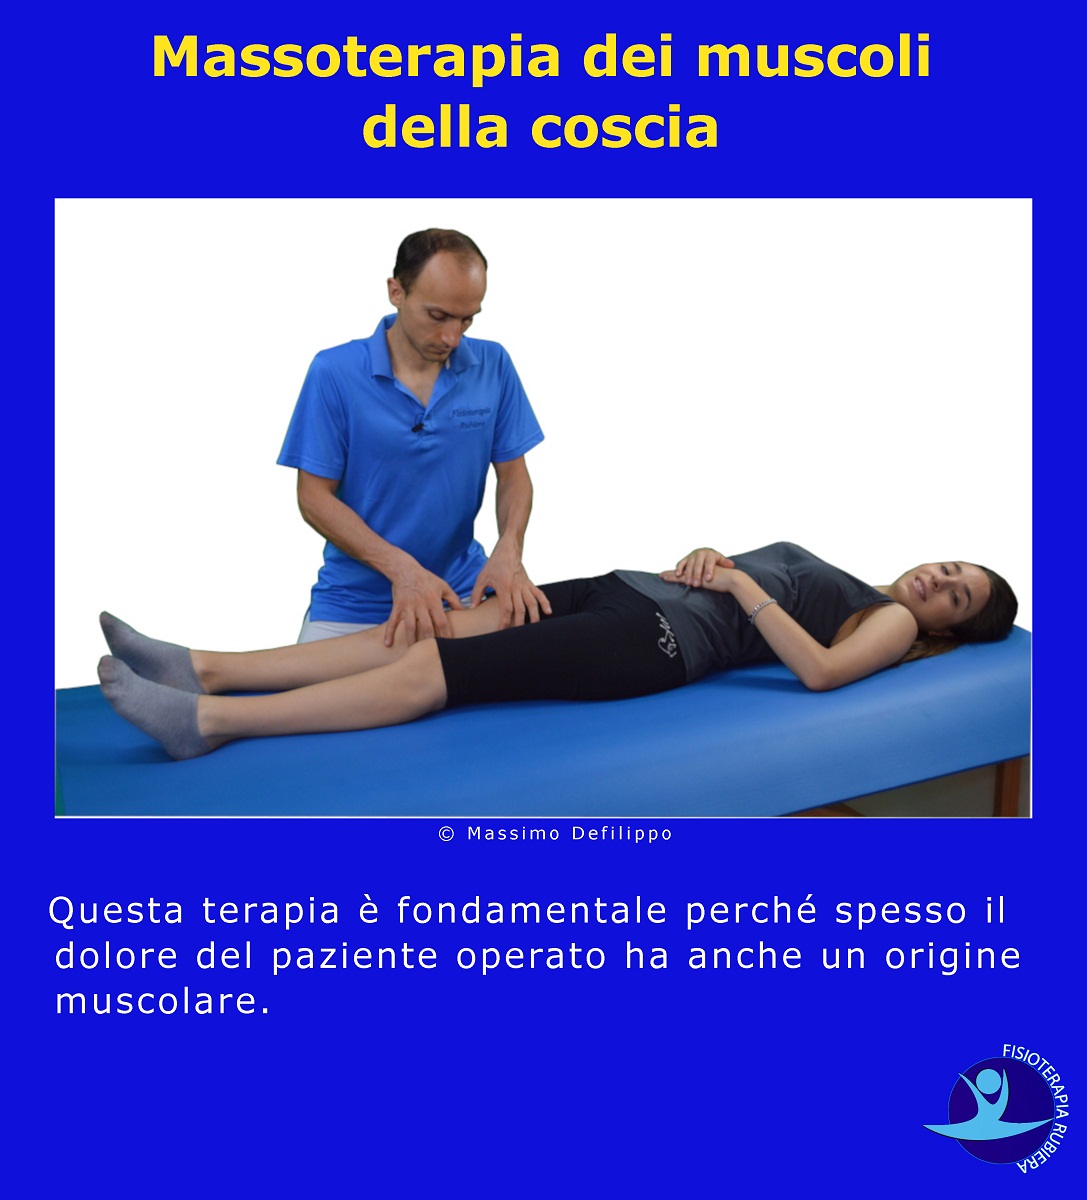 Massoterapia-dei-muscoli-della-coscia